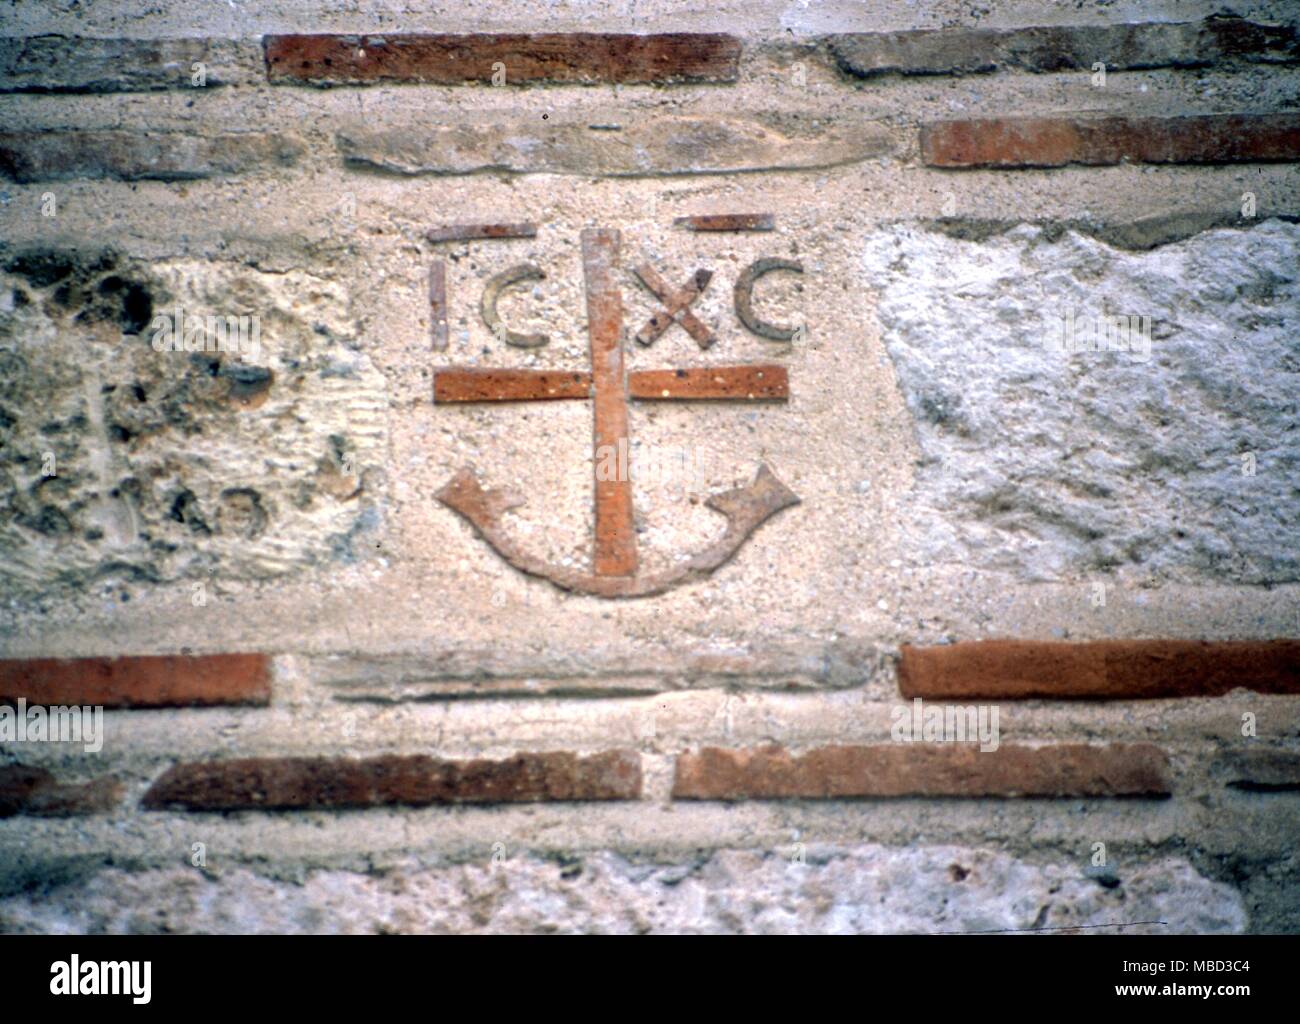 Symbole - Anker einen symbolischen Anker, mit der kurzen Formen von Jesus Christus, in Backstein in der griechisch-orthodoxen Kirche, Agora, Athen. Stockfoto